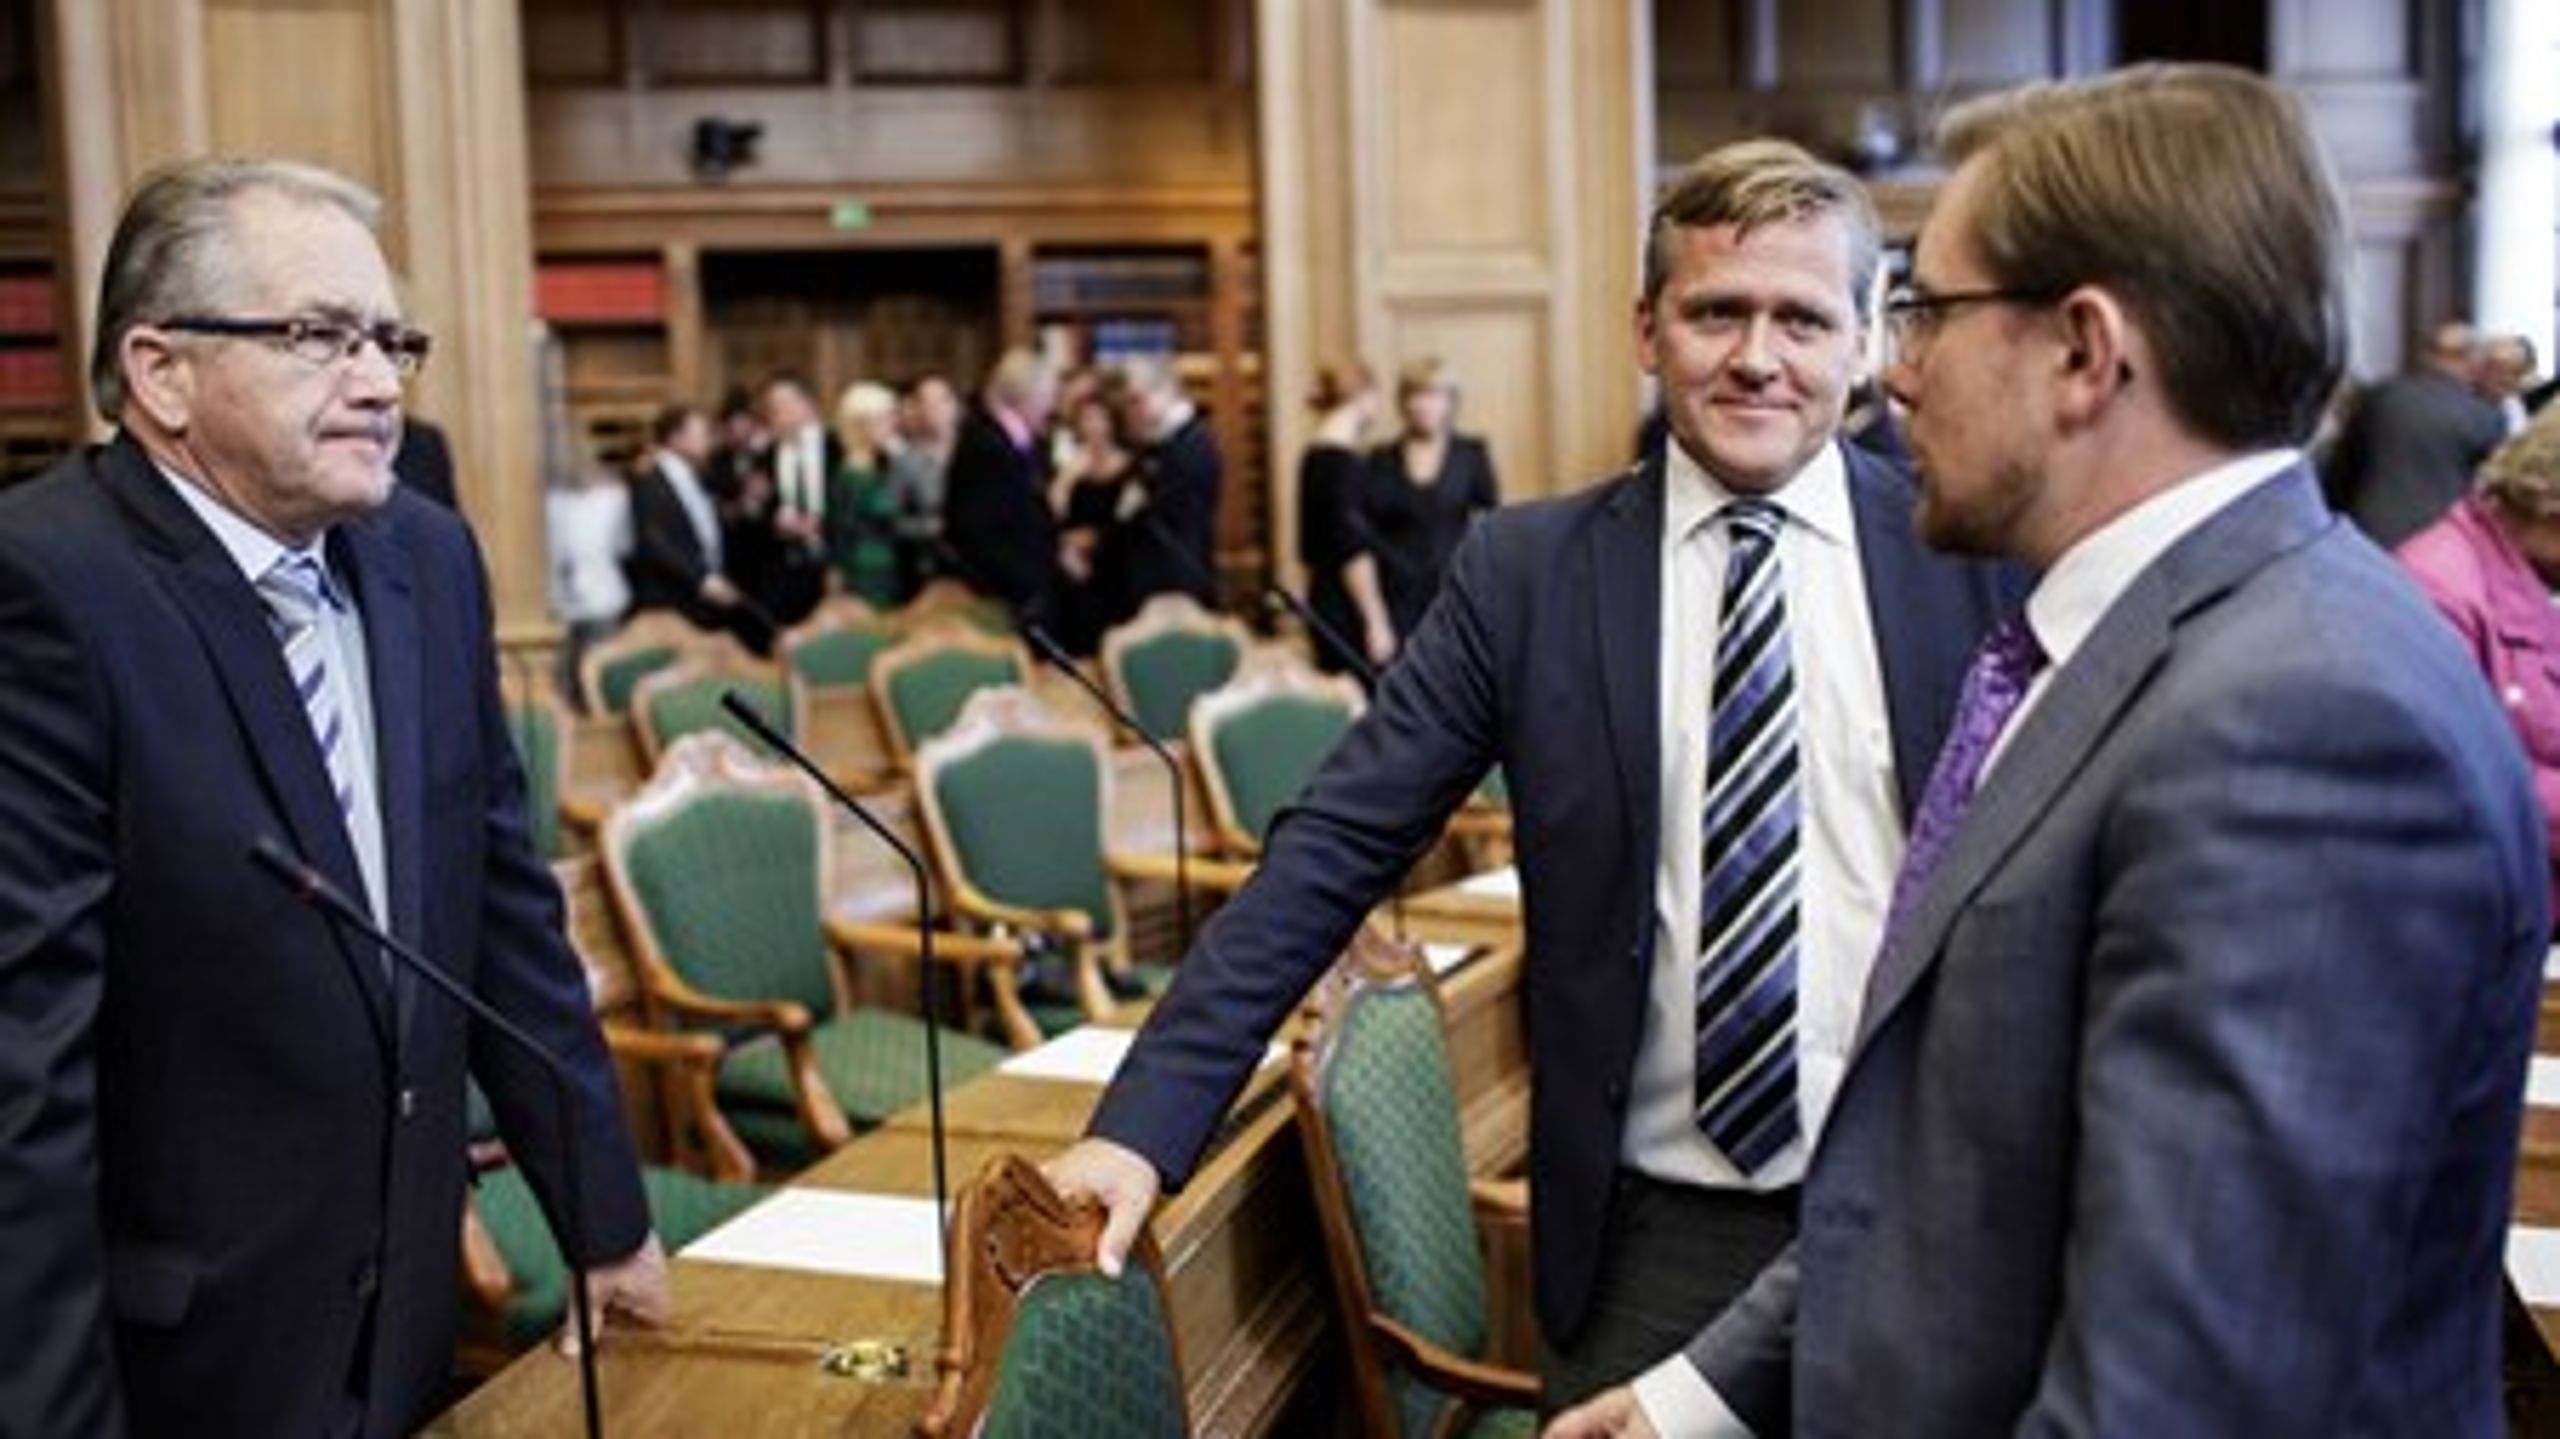 Liberal Alliance når i Risbjergs snit af meningsmålinger for februar et nyt højdepunkt i denne valgperiode.